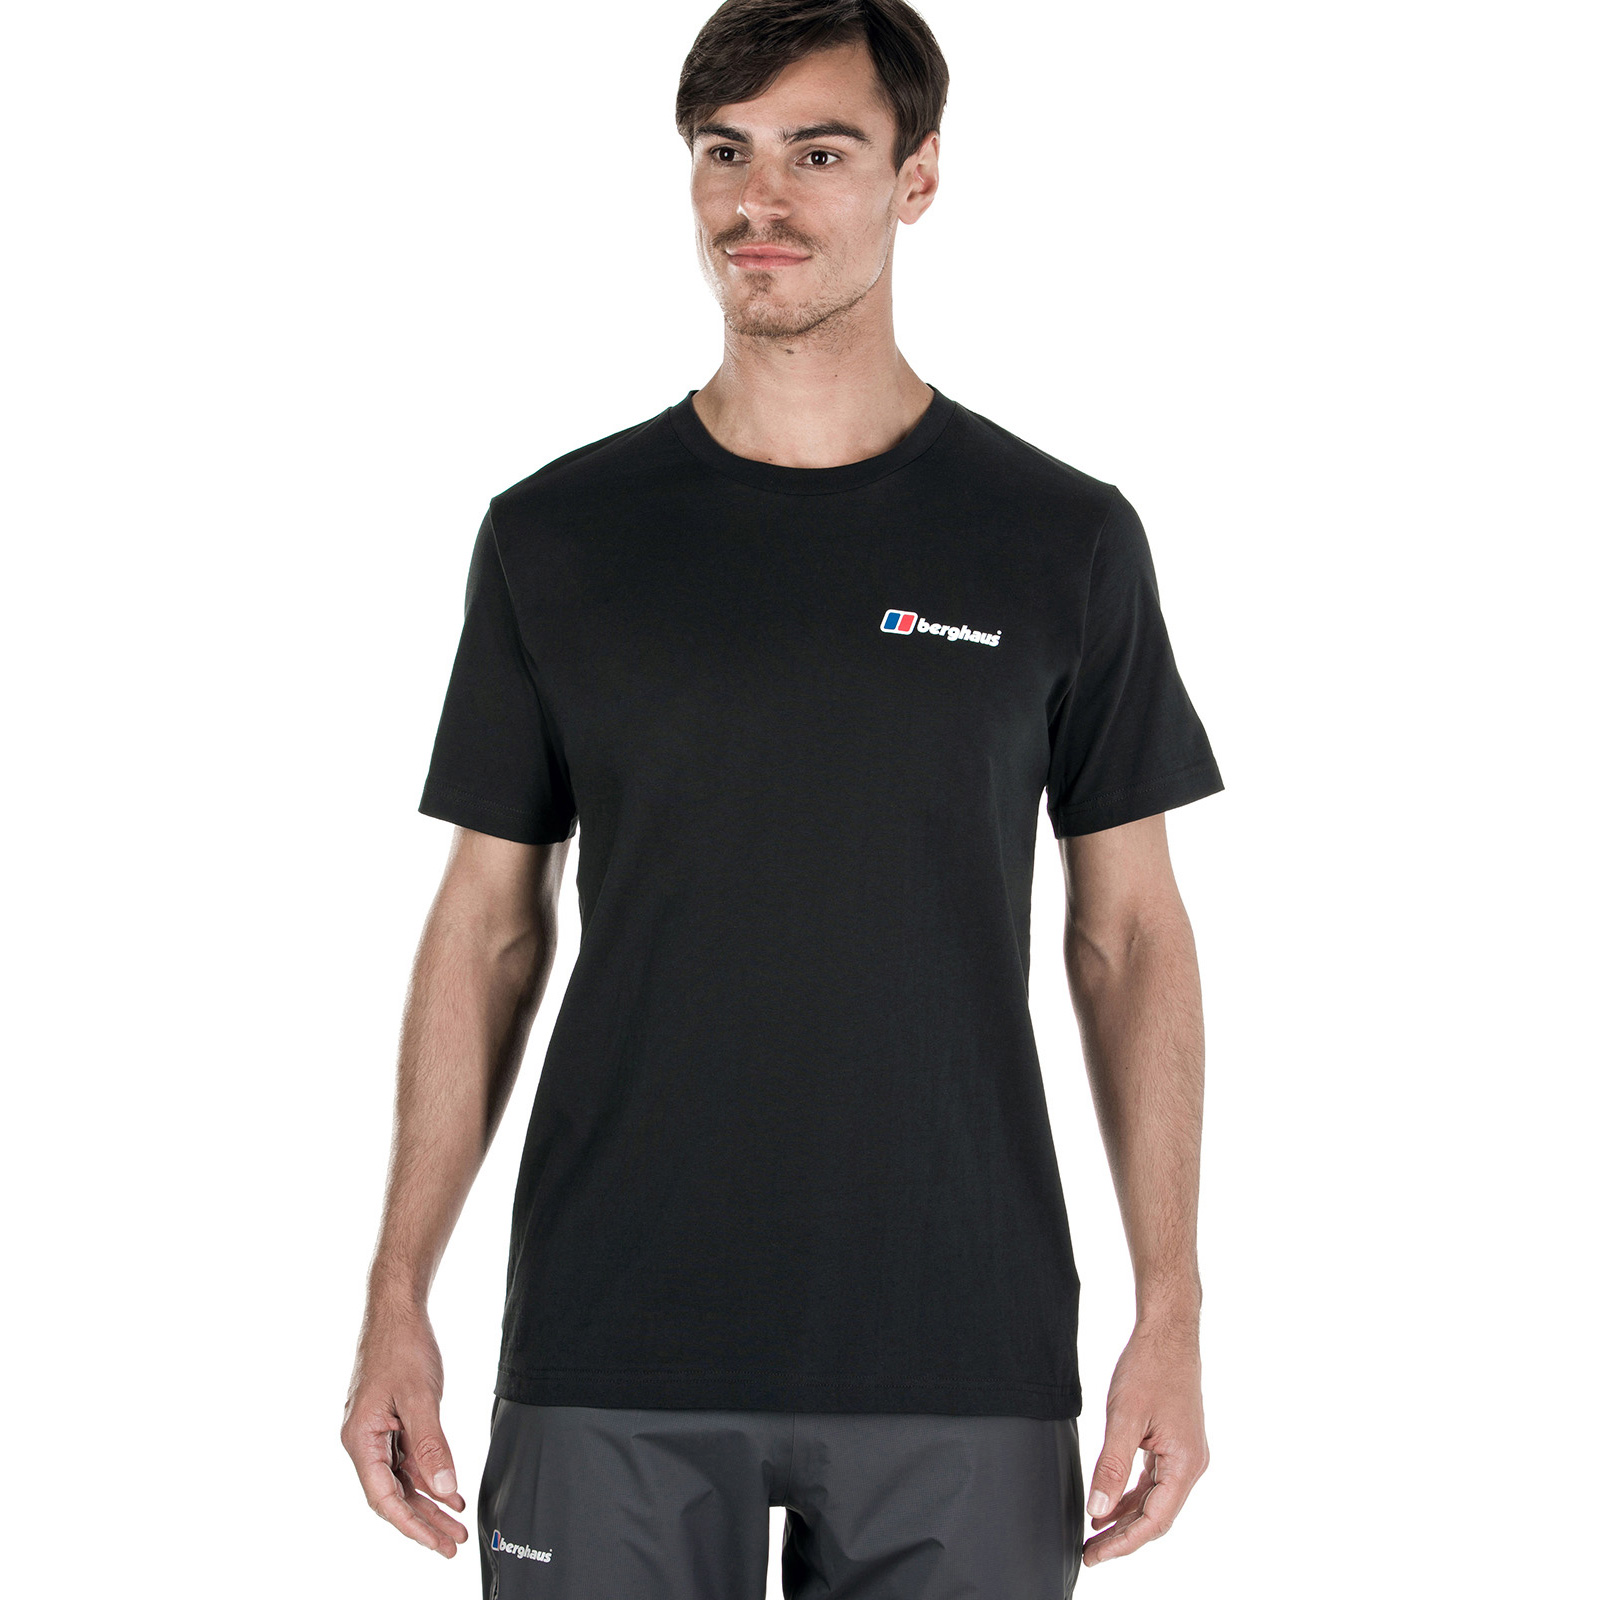 Berghaus Mens Corporate Logo T-Shirt Short Sleeve Tee Cotton Baselayer ...